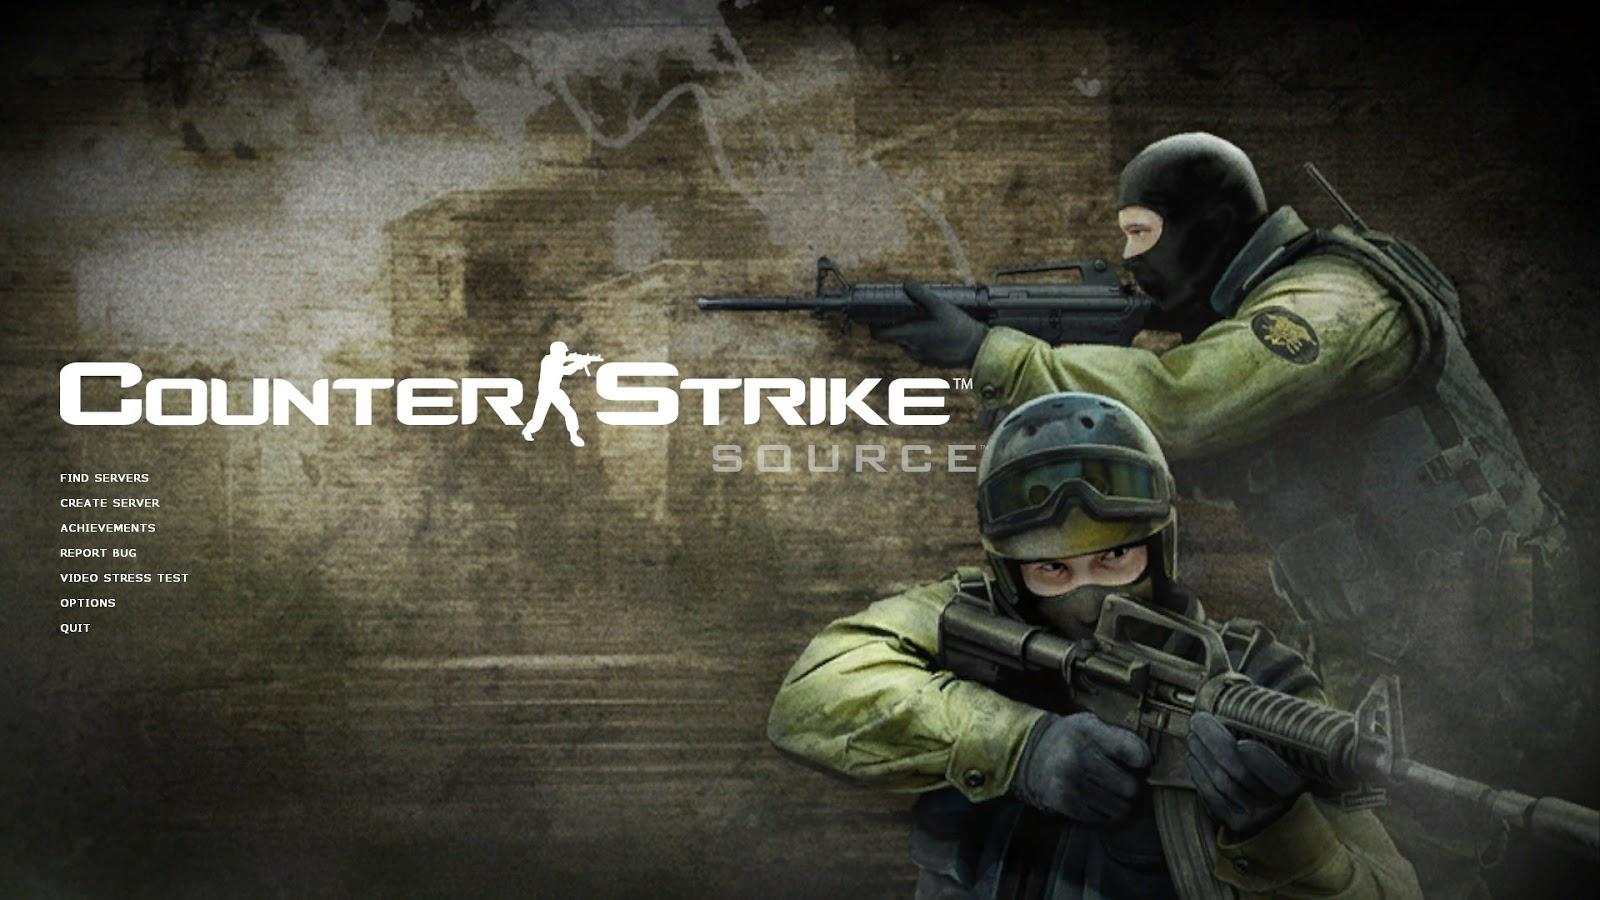 Counter-Strike: Source Steam 100